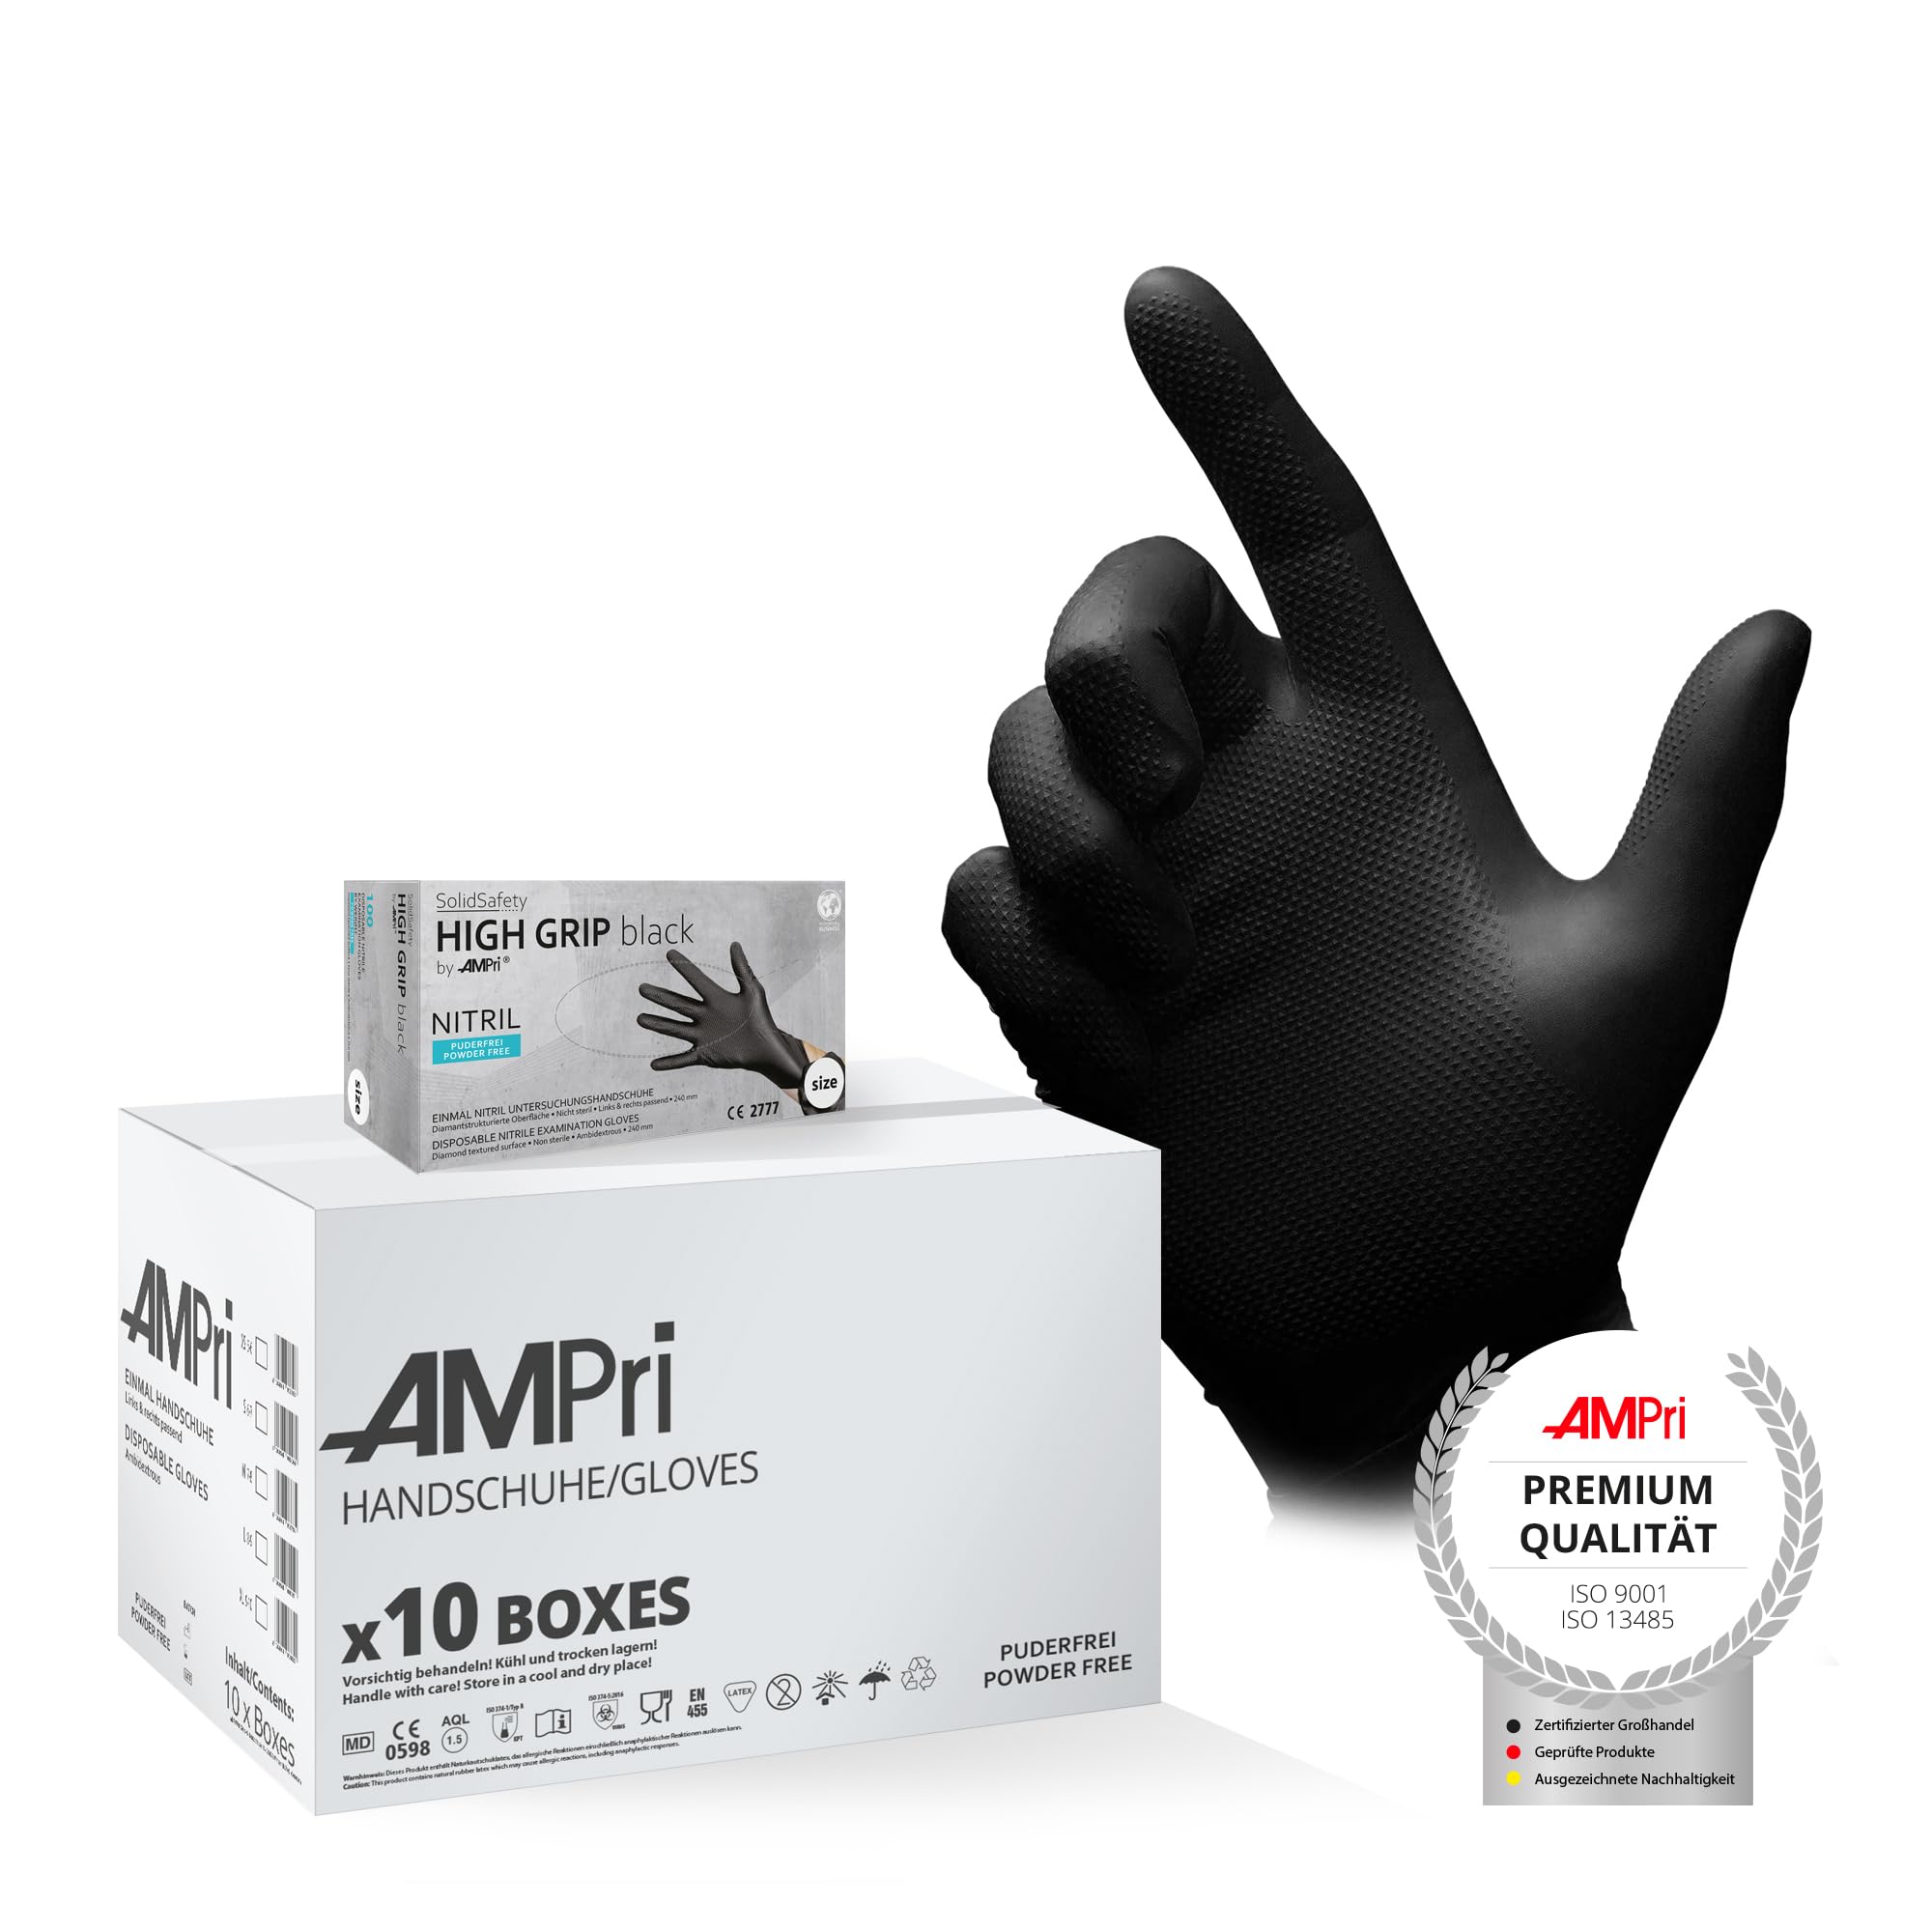 AMPri High Grip Einmalhandschuh aus Nitril, 10 Box a 100 Stk, Größe XL, schwarz, SolidSafety: extra griffiger und chemikalienbeständiger Arbeitsschutzhandschuh in den Größen S, M, L, XL, XXL